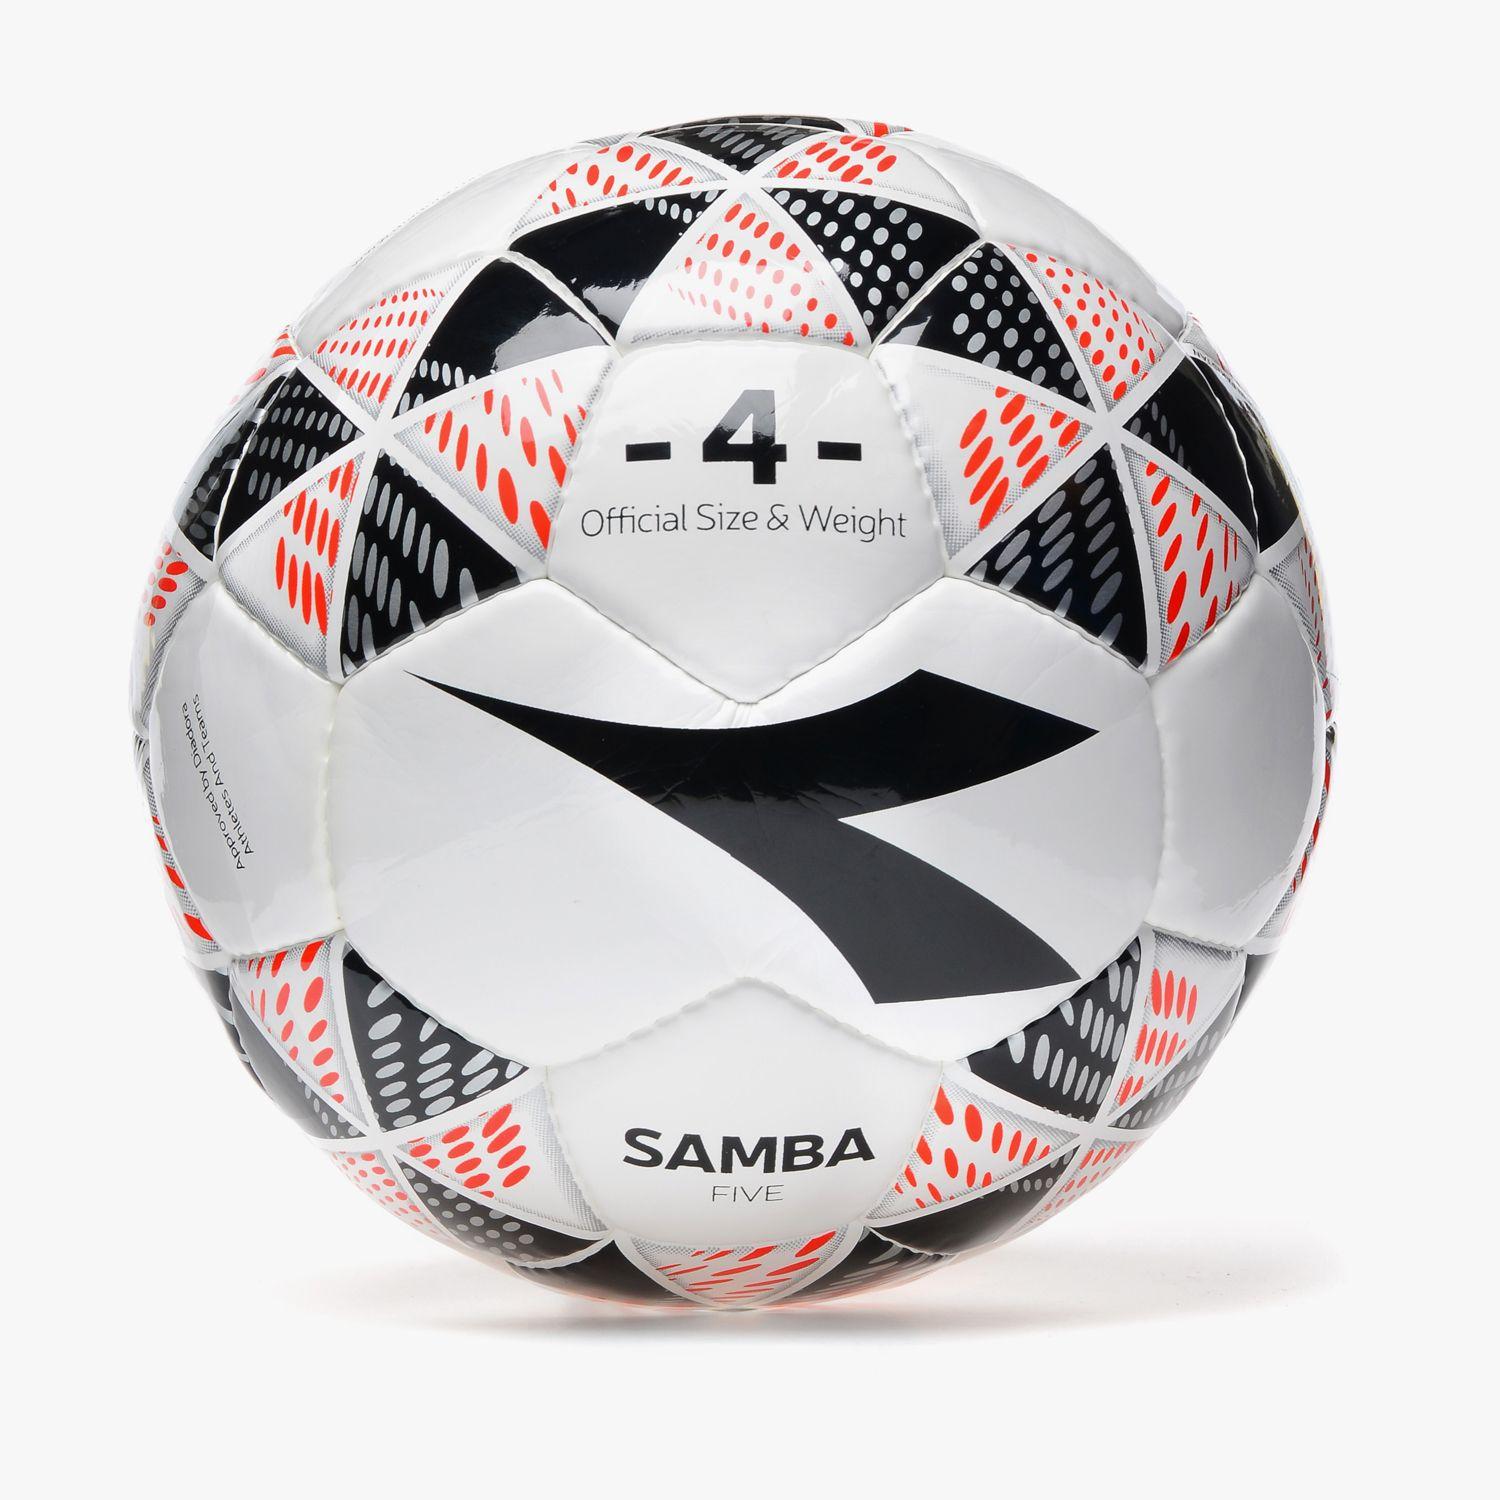 Five Ball Diadora Logo - Diadora Sport SAMBA FIVE - Diadora Online Shop US